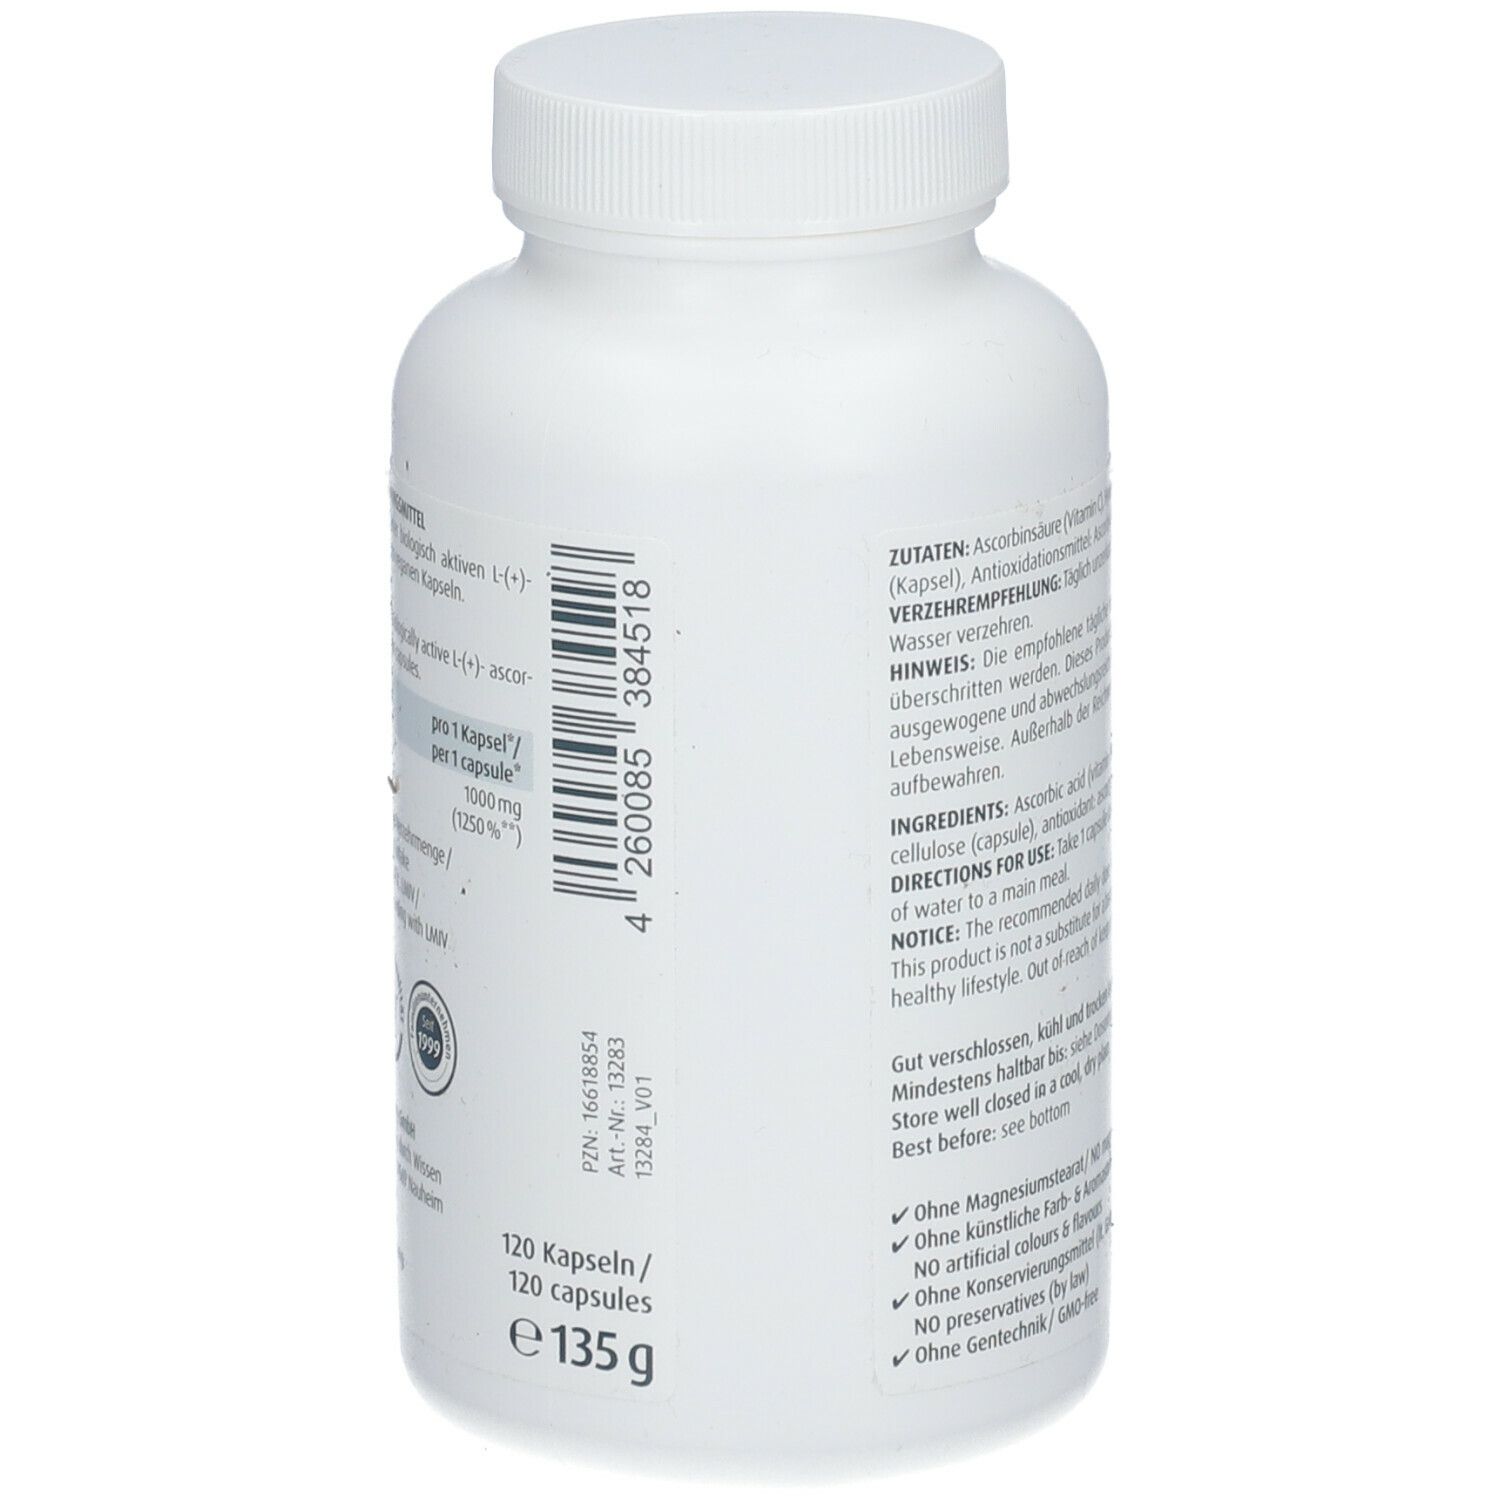 ZeinPharma® VITAMIN C 1000 mg